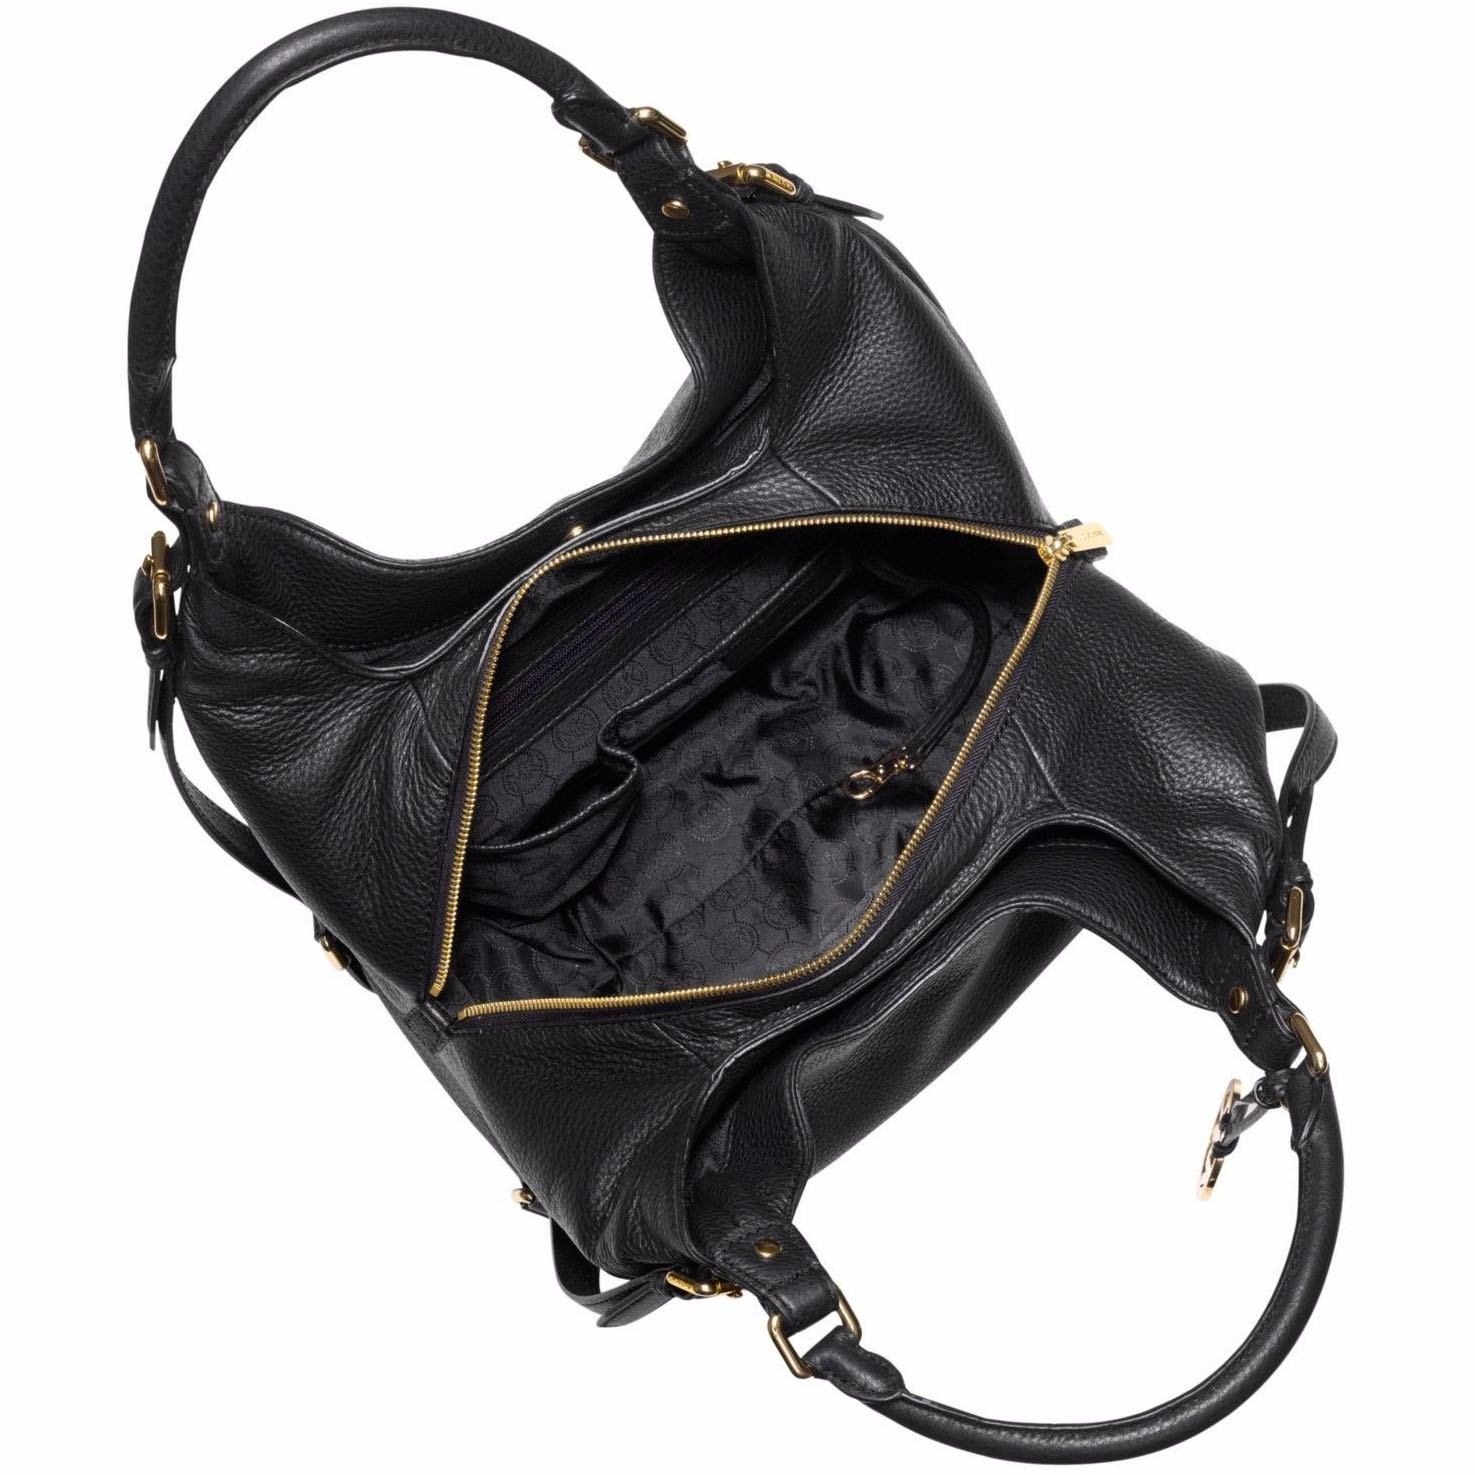 Michael Kors Bedford Belted Large Leather Tote Shoulder Bag Black # 38S7GBFL3L